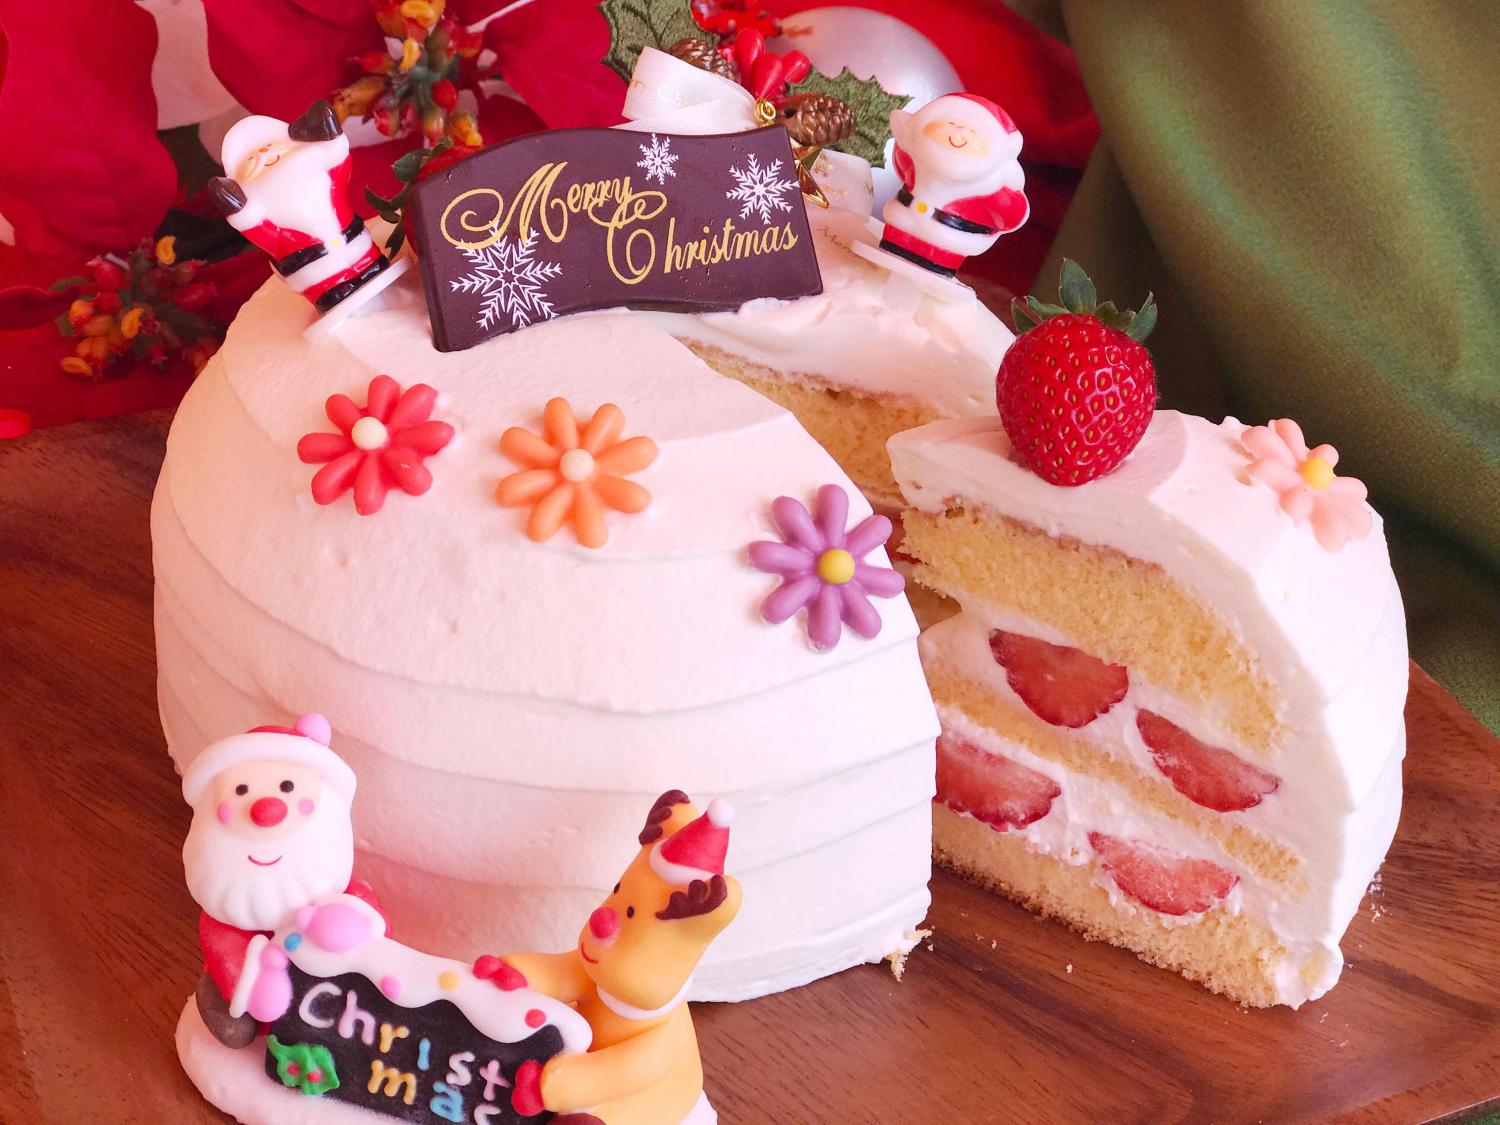 平成最後 今年はどのクリスマスケーキにする 練馬クリスマスケーキ18年版 特集記事 とっておきの練馬